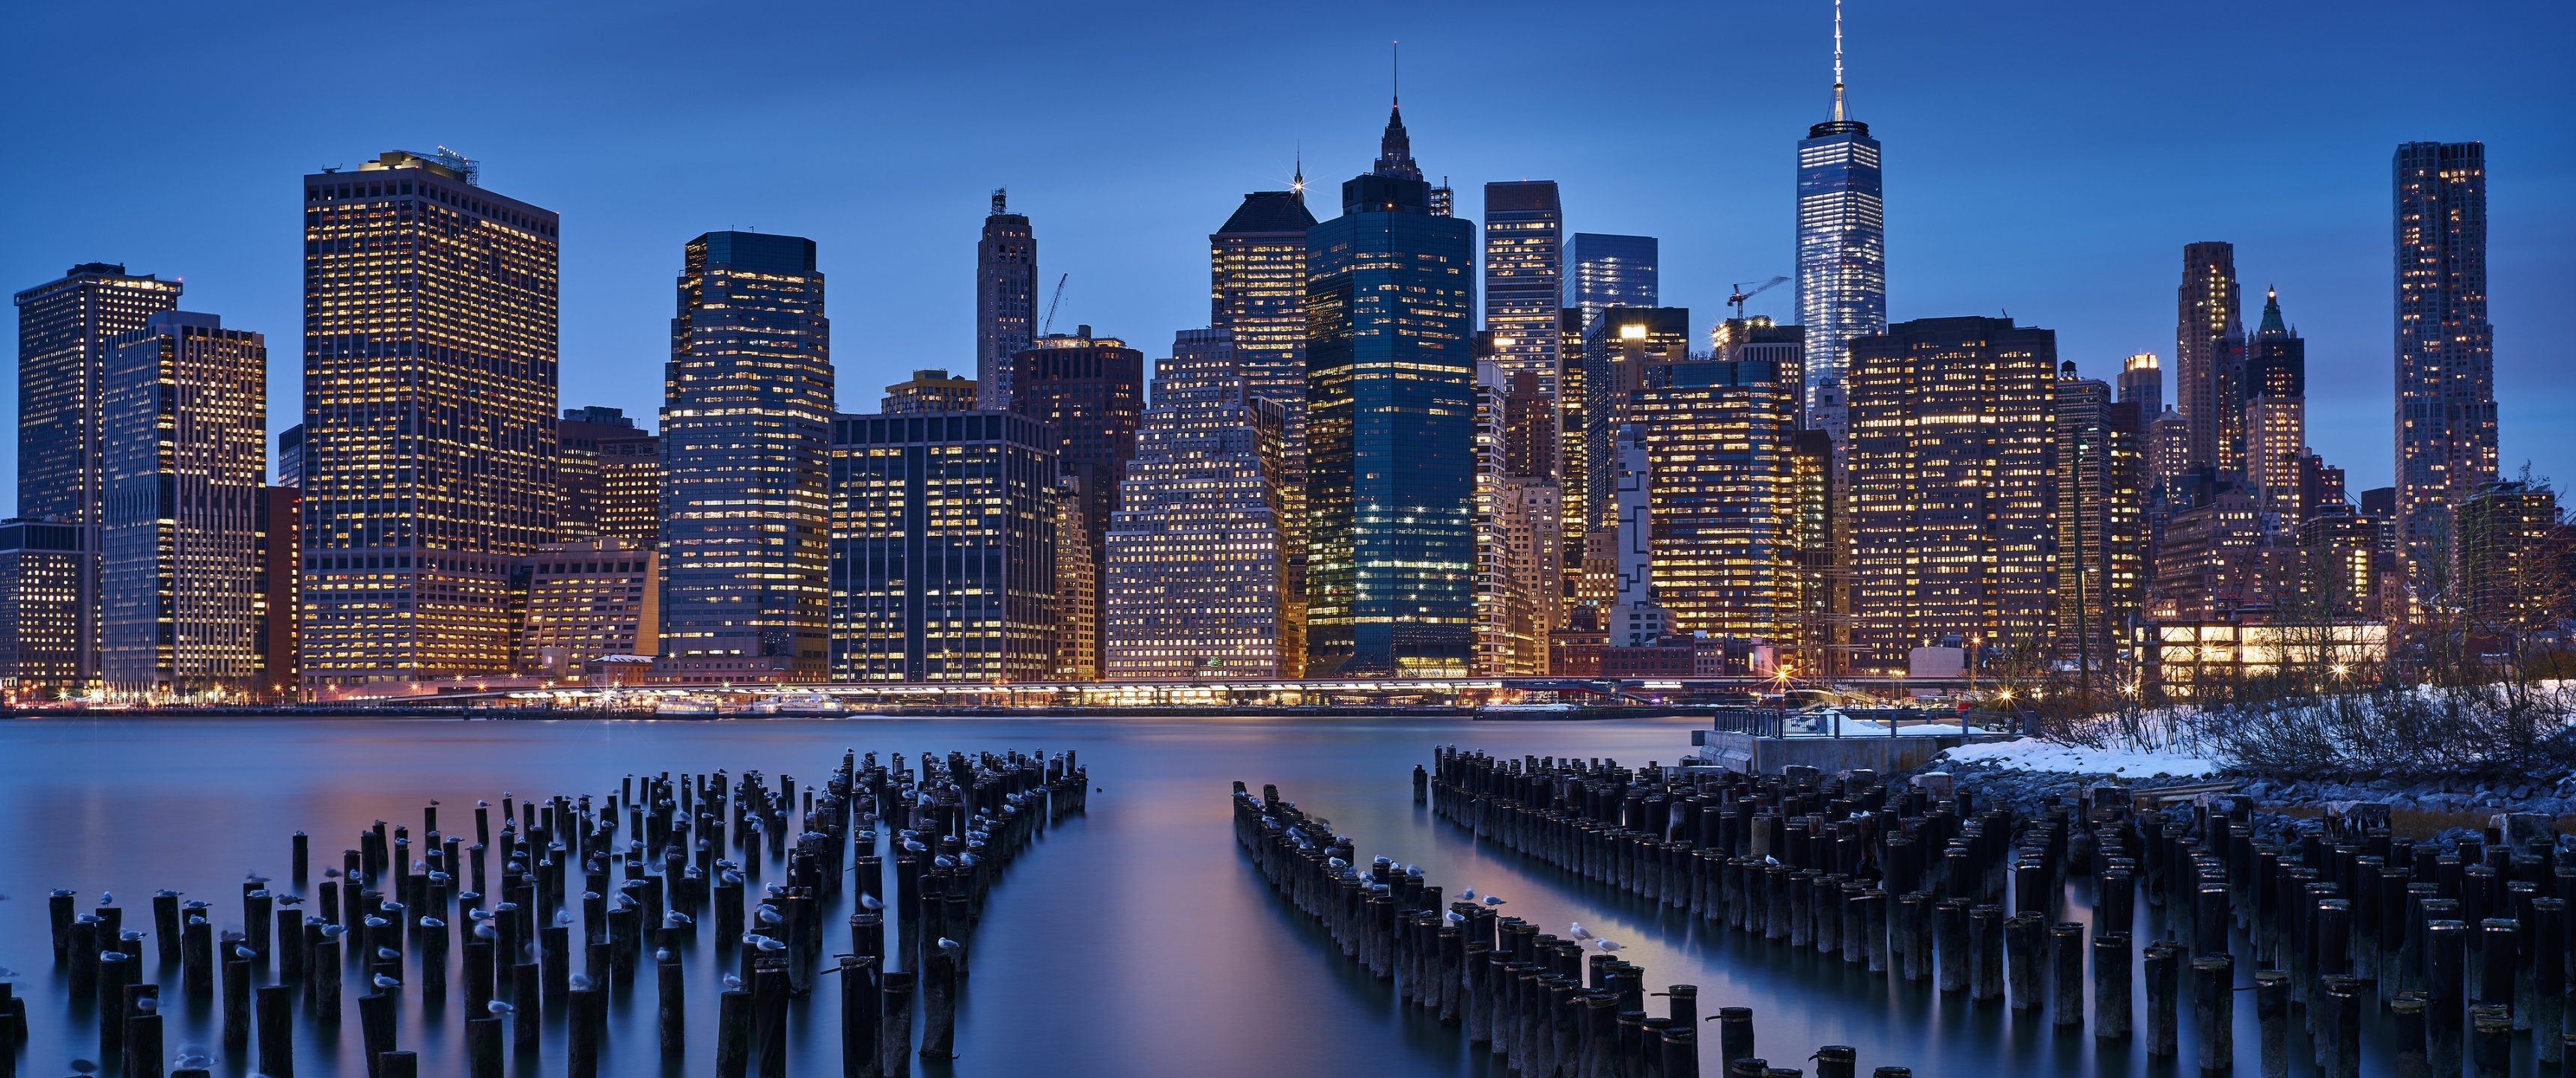 Manhattan (Travels), 4K Manhattan wallpaper, City lights, Cityscape beauty, 3440x1440 Dual Screen Desktop